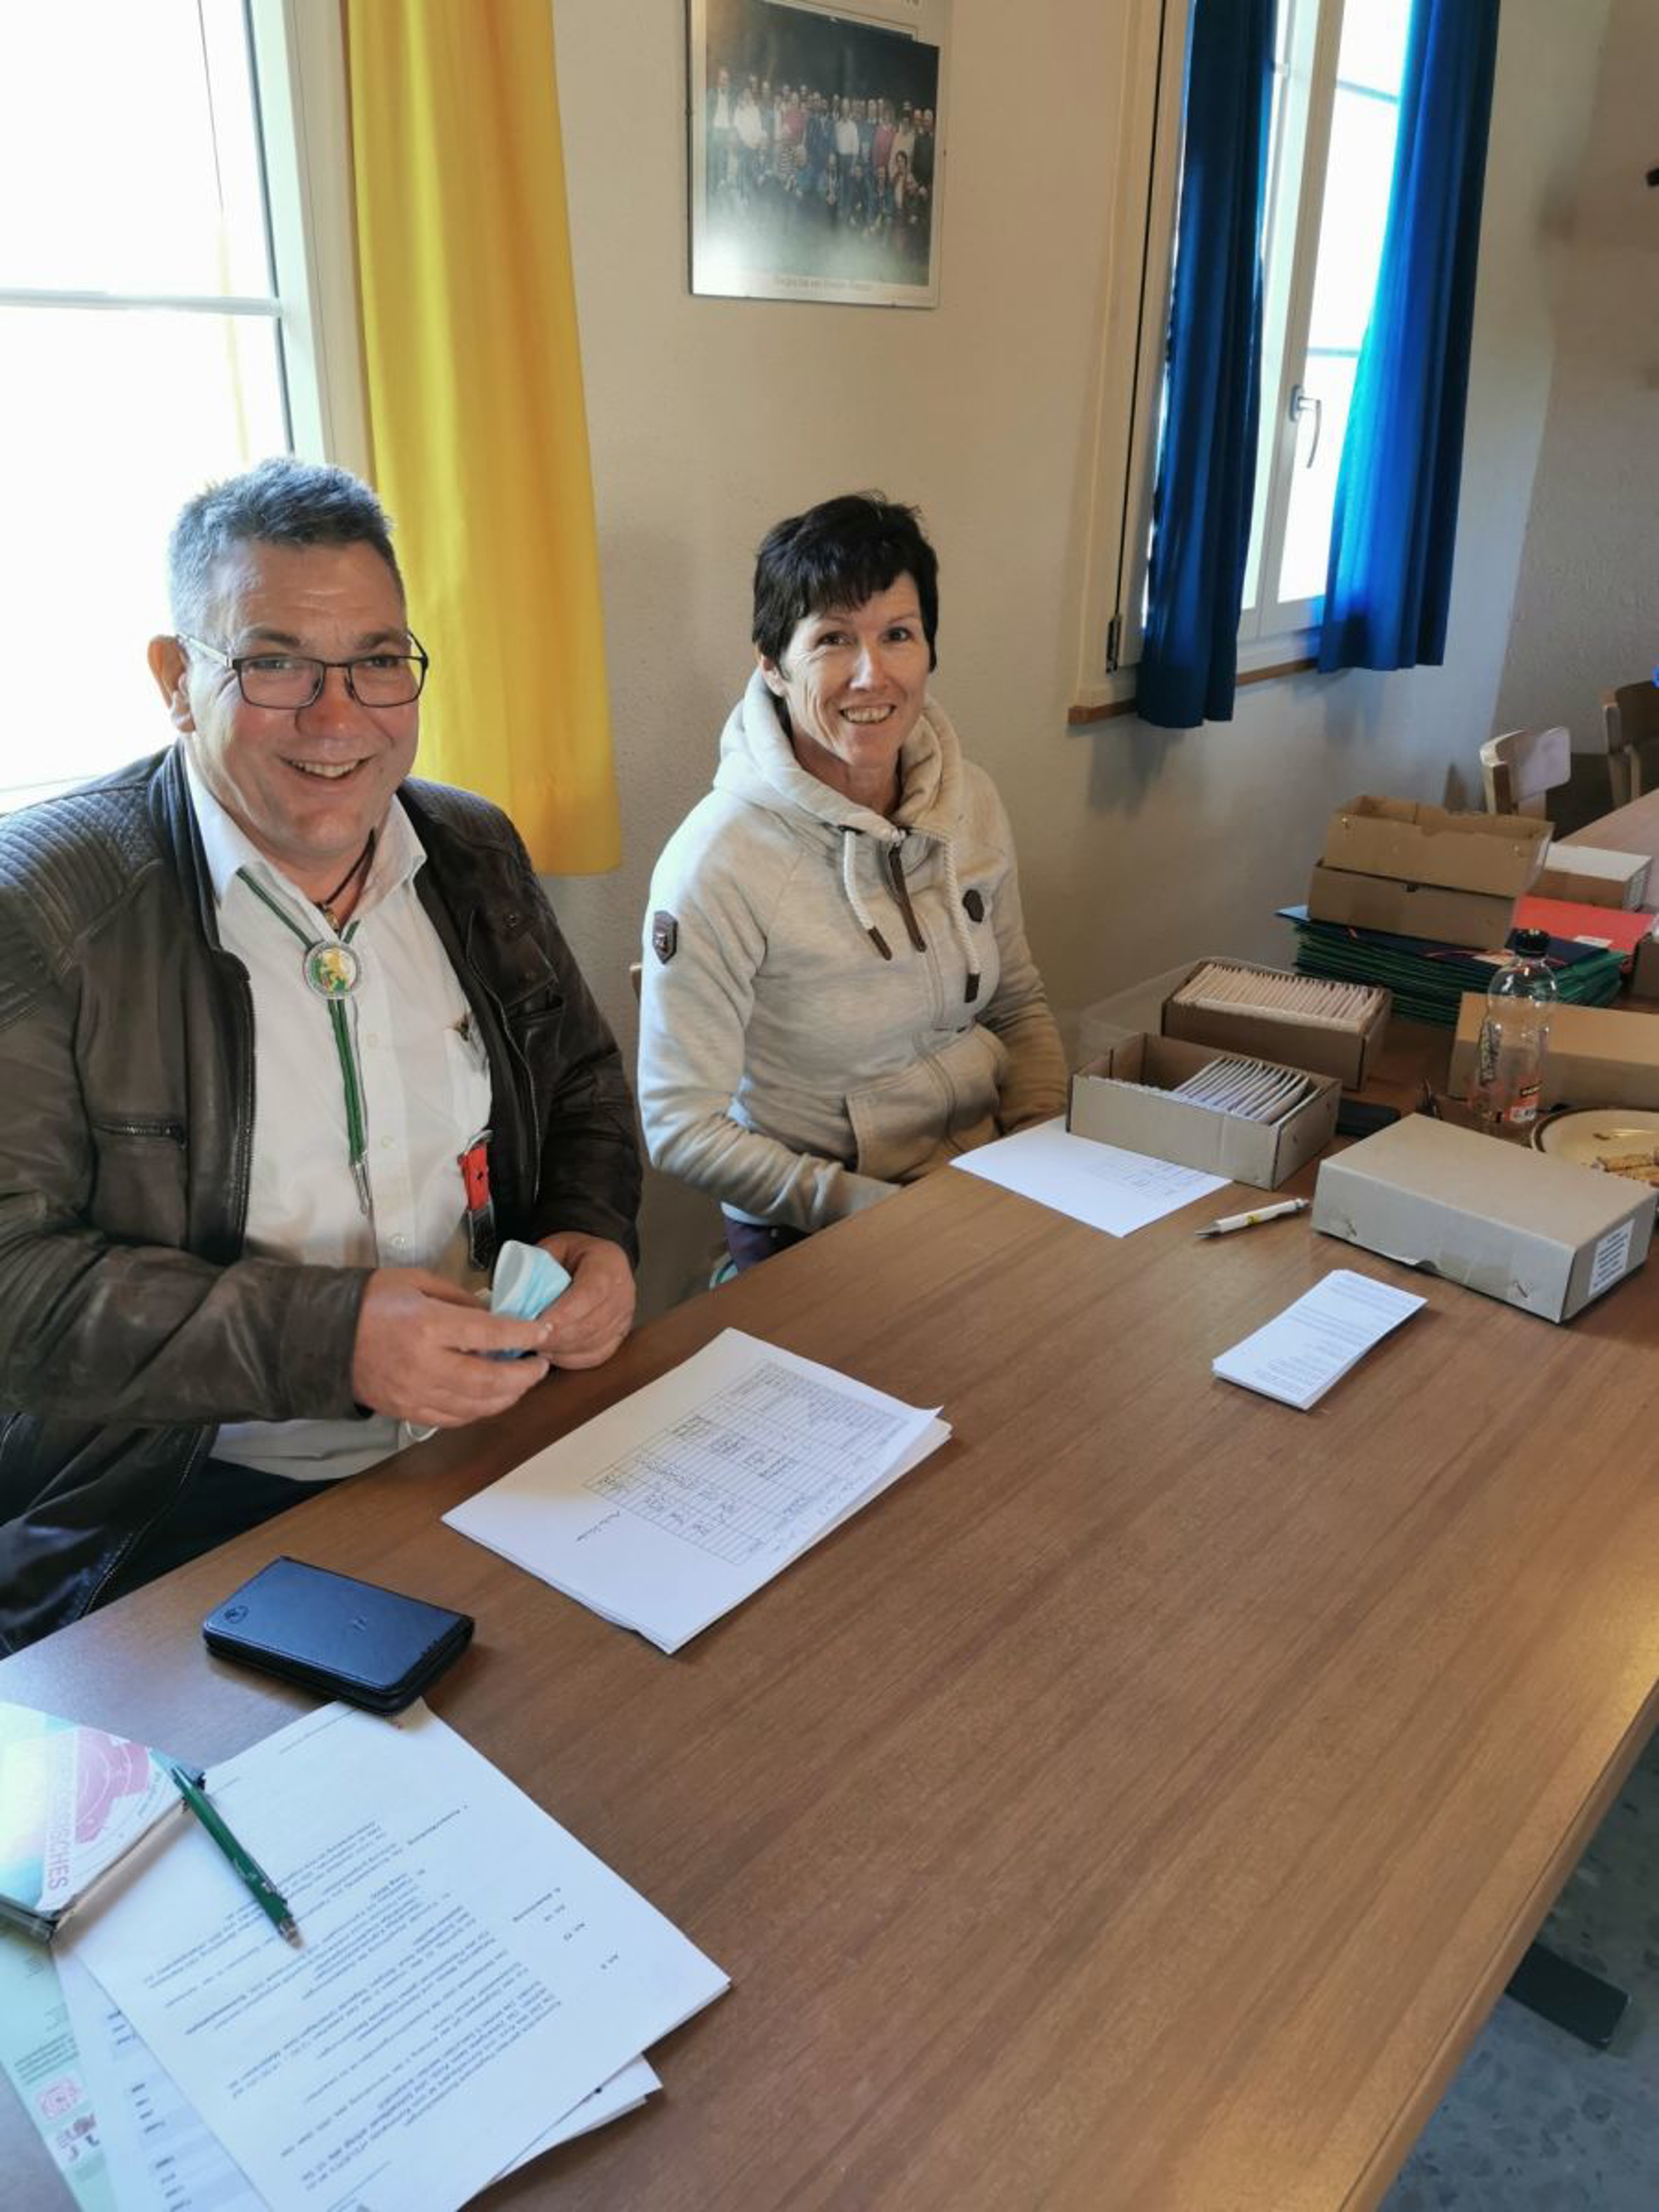 Hanspeter Bamert, Kommisionsmitglied des TKSV, mit seiner Frau Elisabeth im Rechnungsbüro im Schützenhaus Bürglen beschäftigt mit dem Abschluss des EFS 2021.